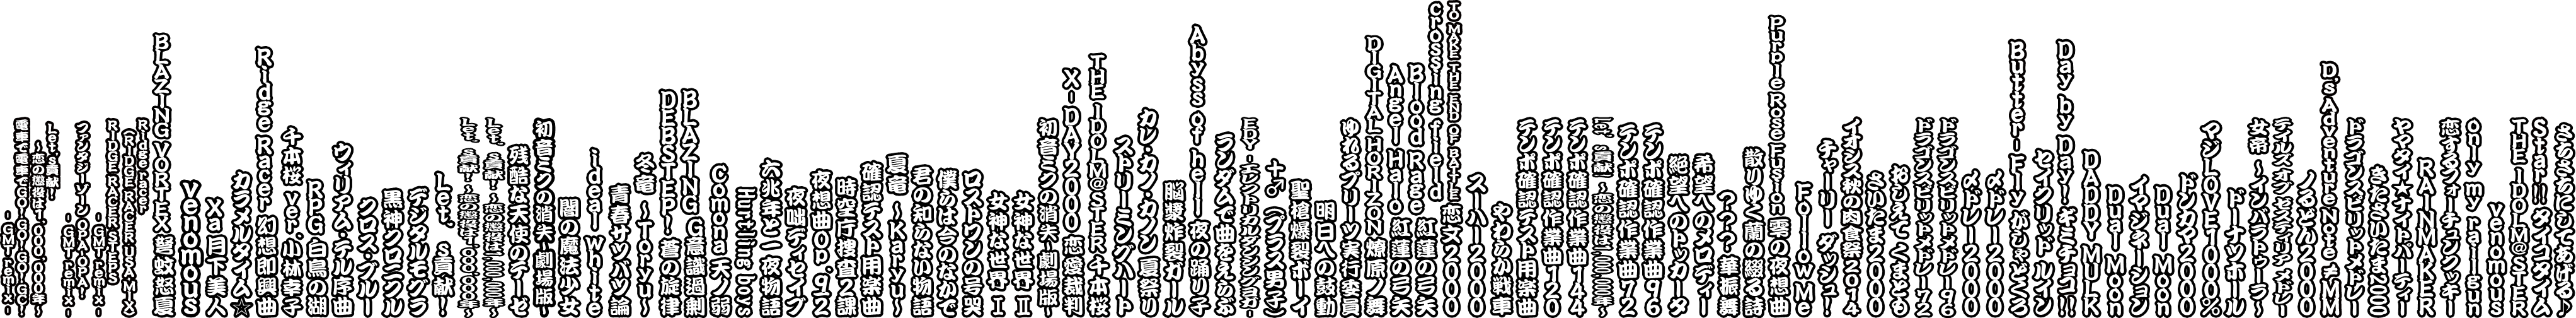 Taiko no Tatsujin: V Version - Selected Song Titles